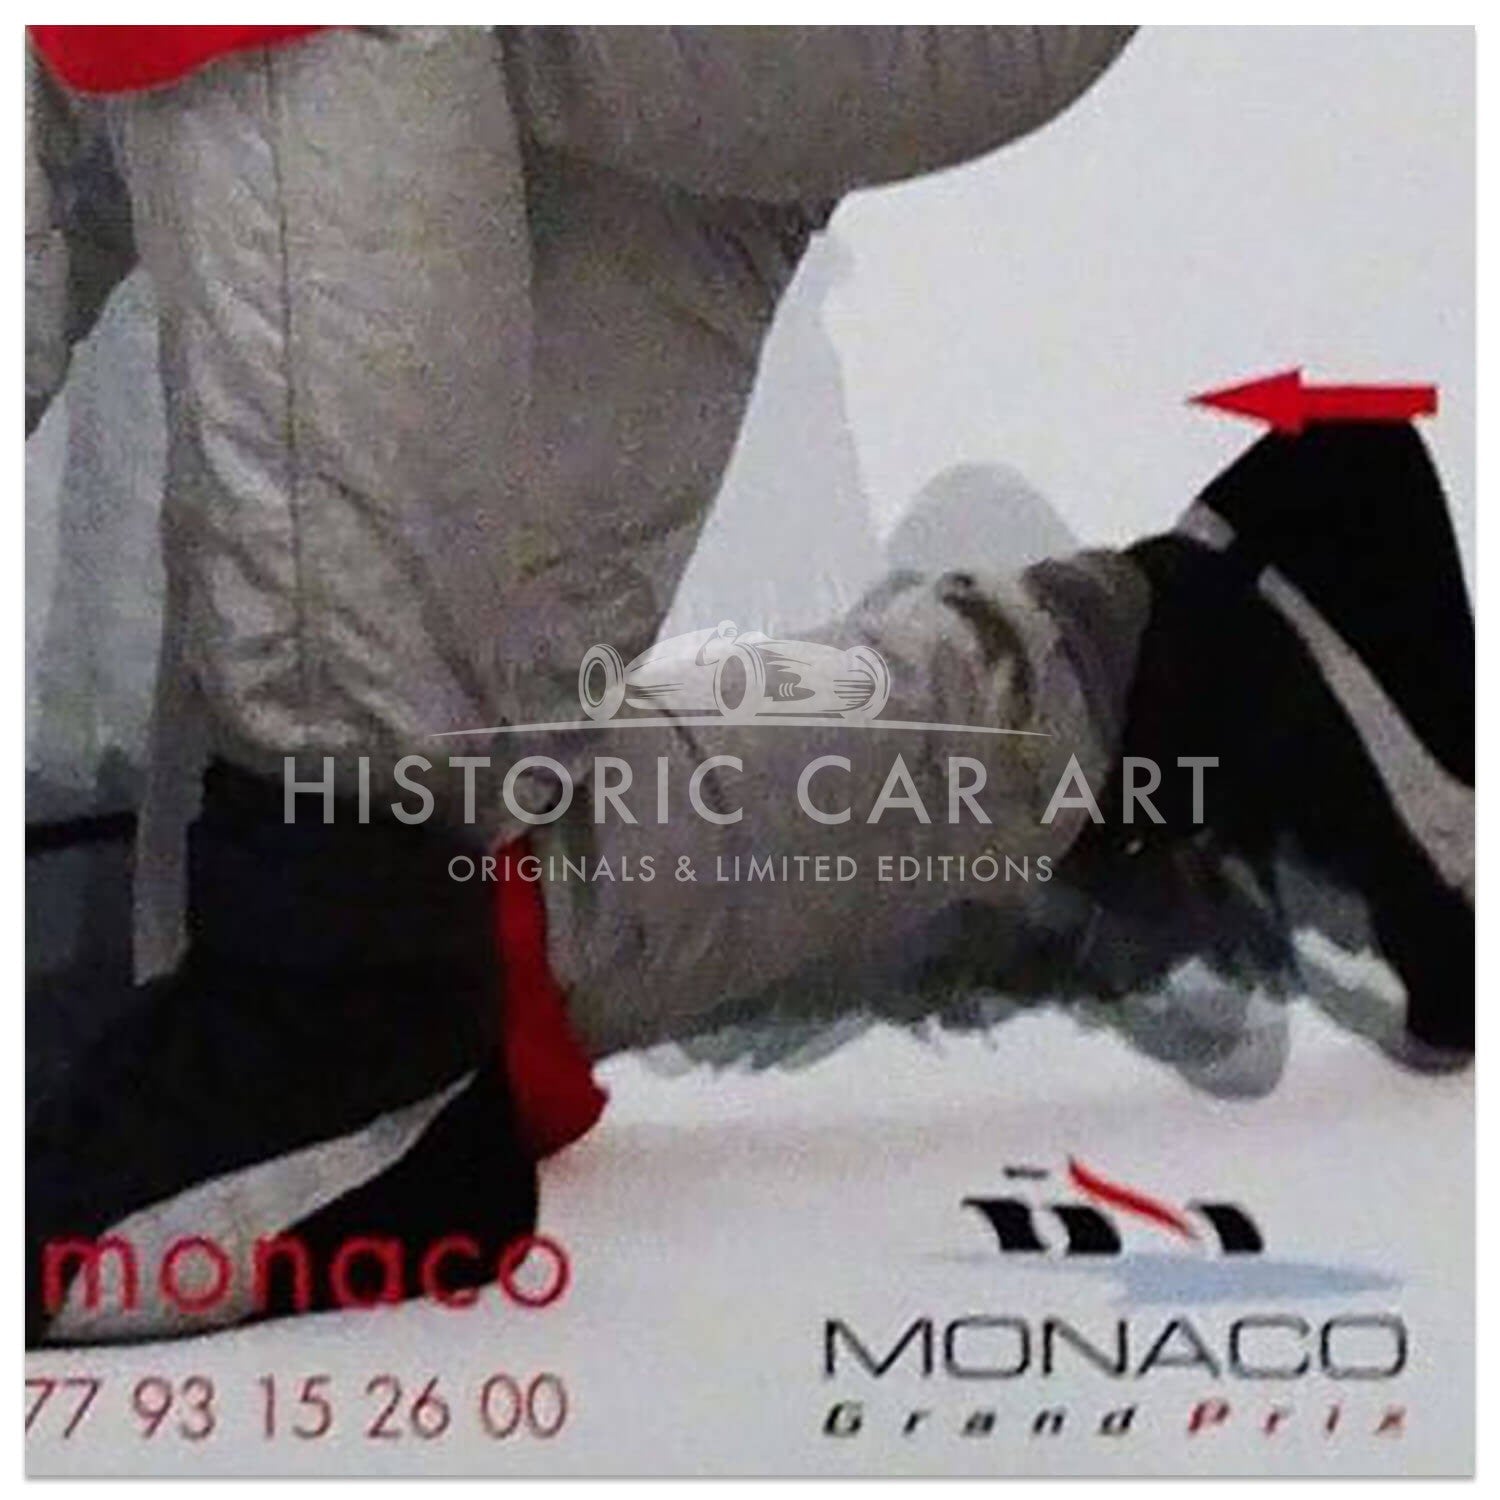 French | Monaco Grand Prix 2002 | Original Poster